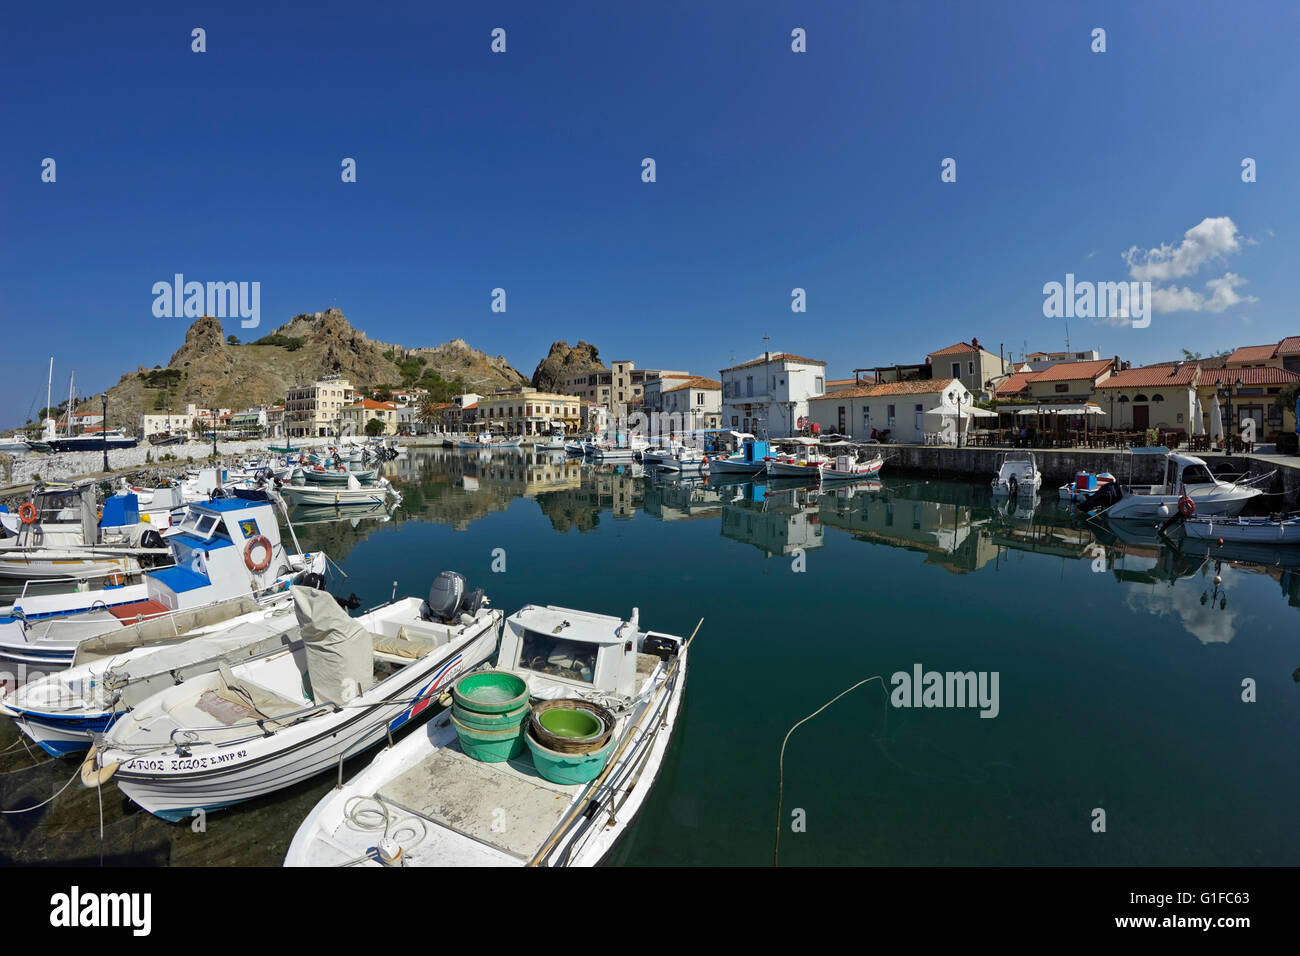 Schöne malerische Myrina Stadt Haven und seine ruhige Reflexionen auf der Wasseroberfläche klaren Meer. Weiten Blick. Limnos, Griechenland Stockfoto